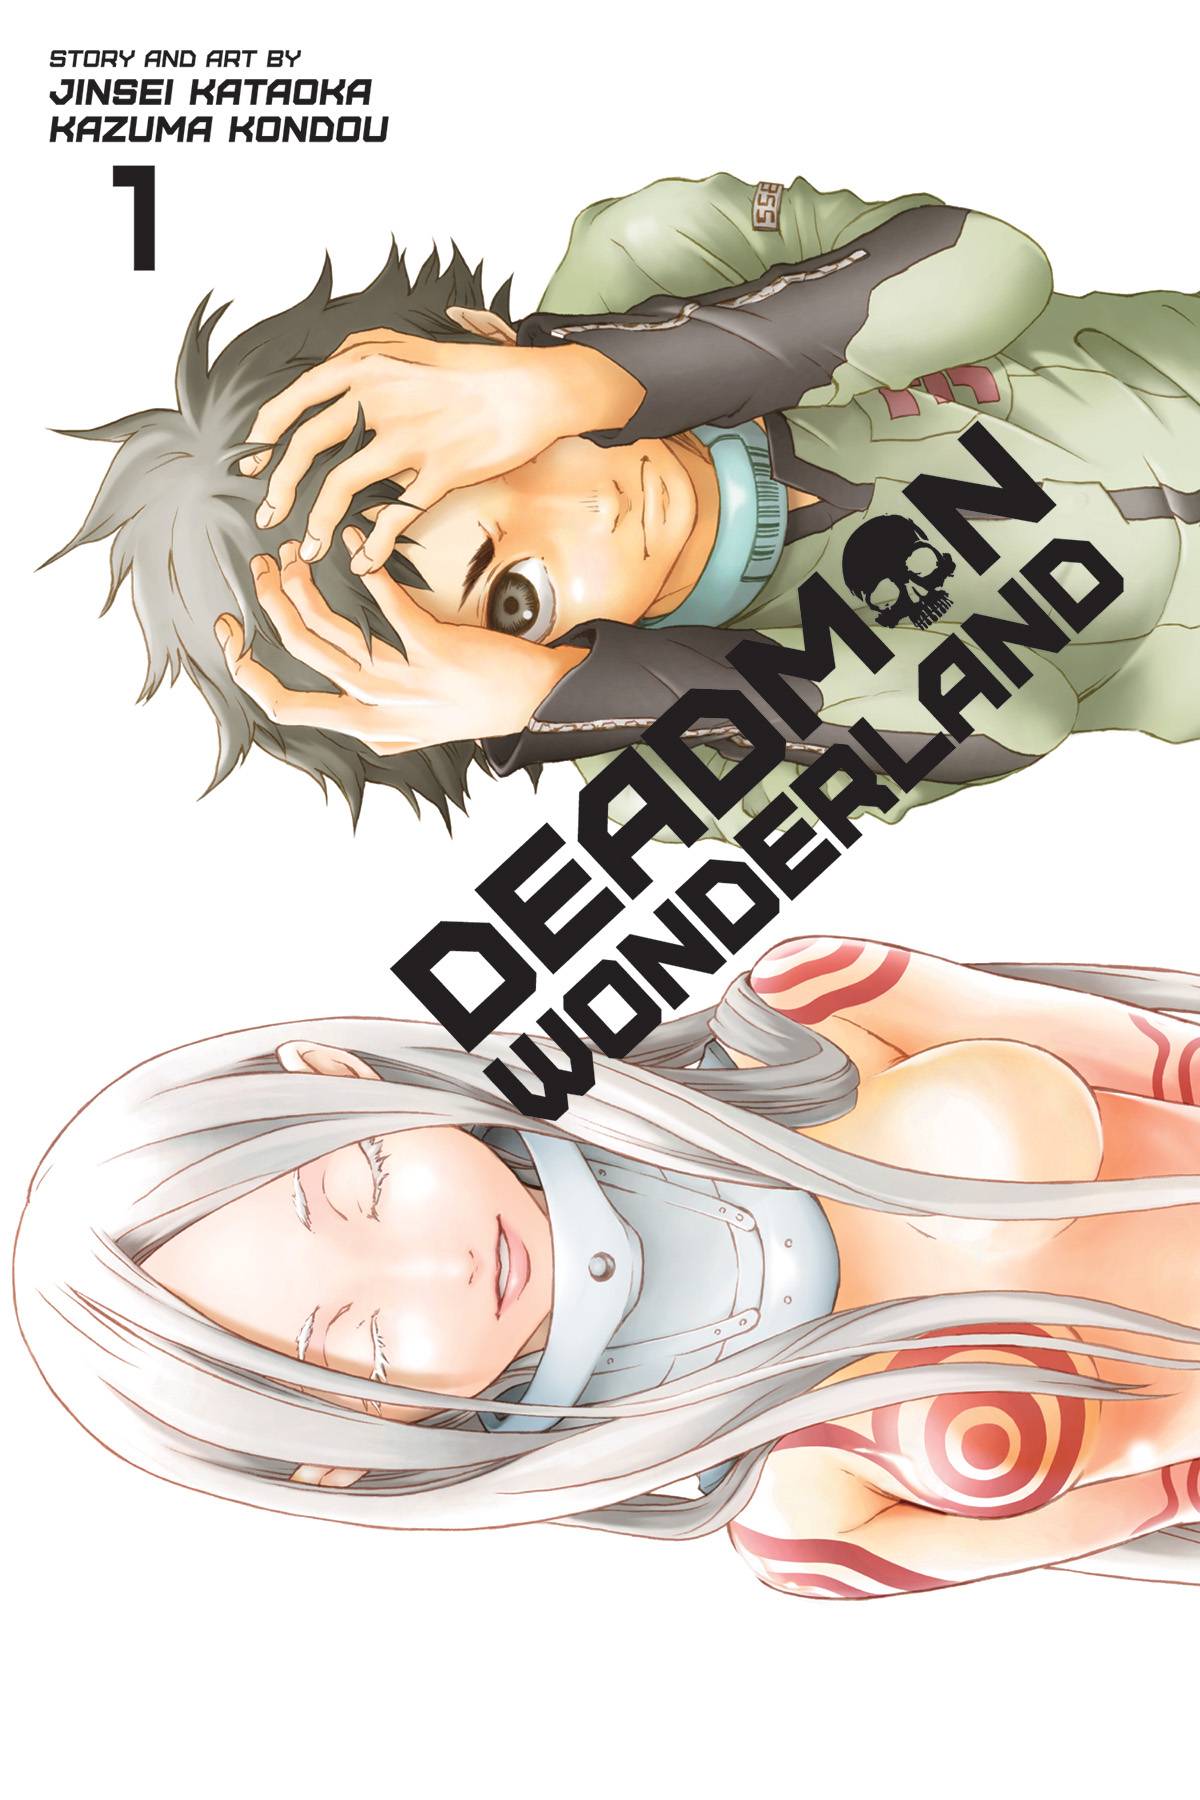 Deadman Wonderland Manga Volume 1